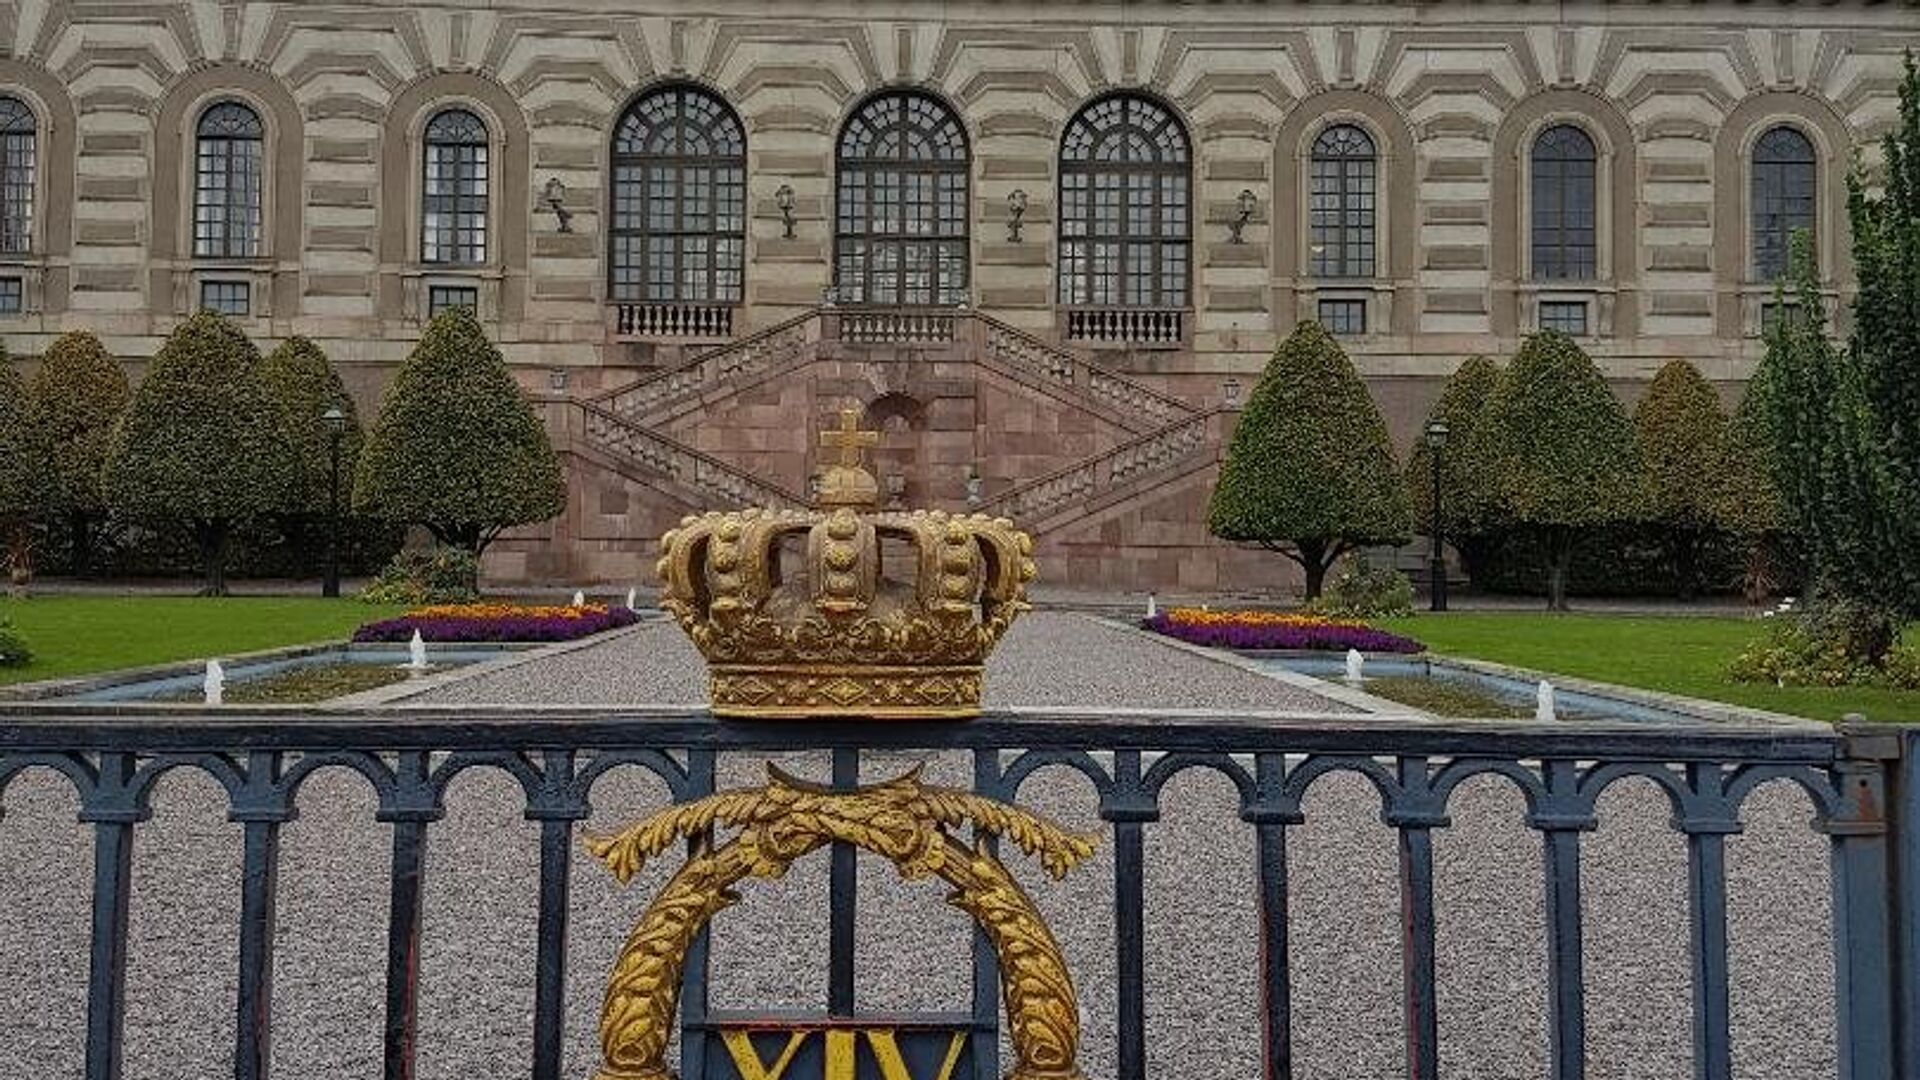 Ispred Kraljevski dvorac u starom delu Stokholma (Gamla stanu). - Sputnik Srbija, 1920, 07.12.2021